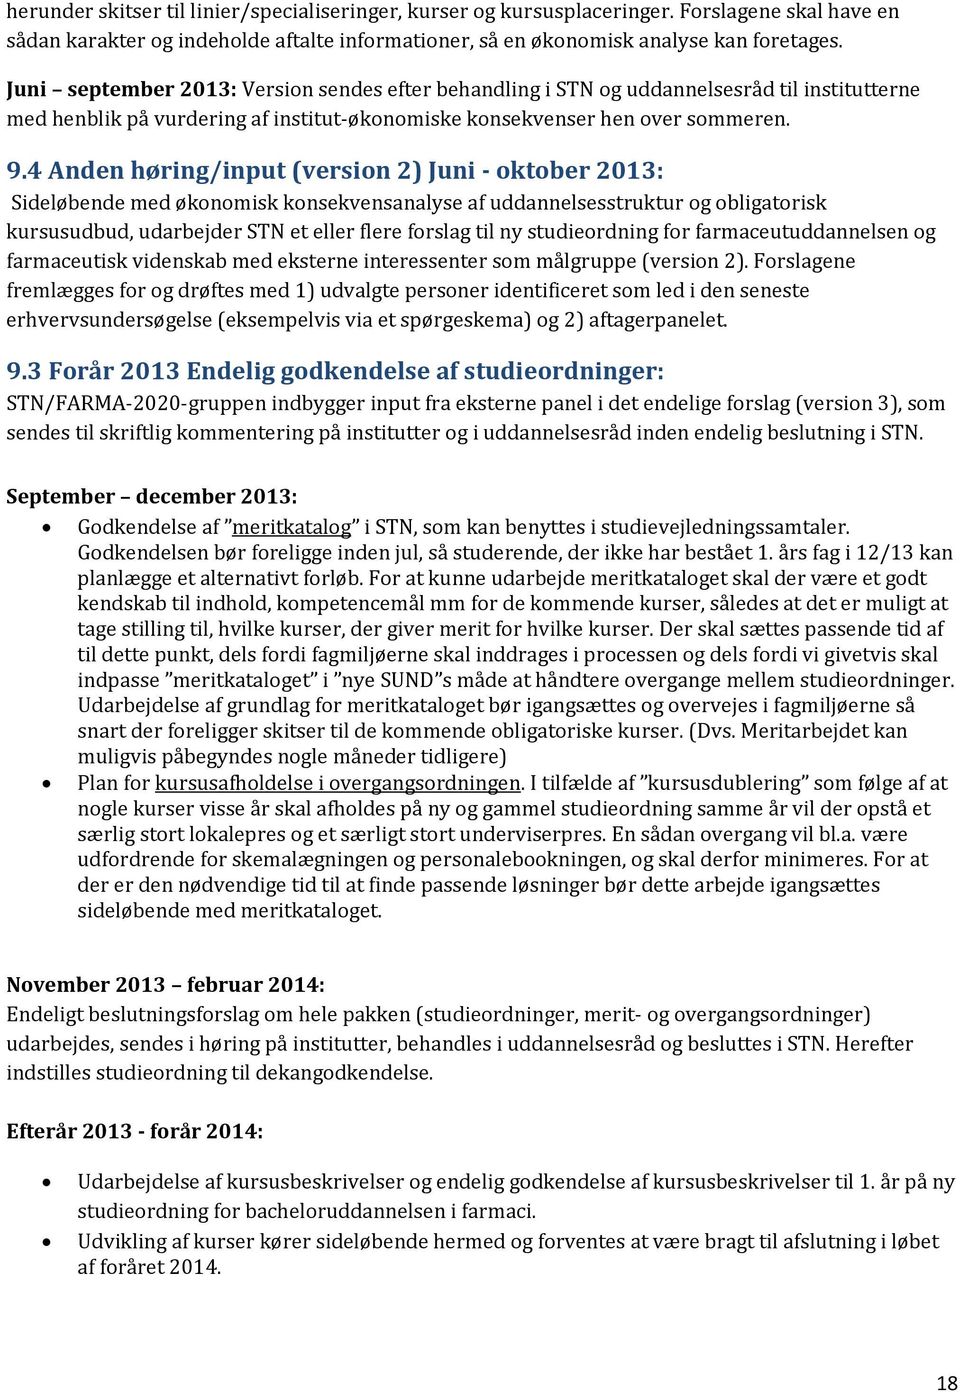 4 Anden høring/input (version 2) Juni - oktober 2013: Sideløbende med økonomisk konsekvensanalyse af uddannelsesstruktur og obligatorisk kursusudbud, udarbejder STN et eller flere forslag til ny